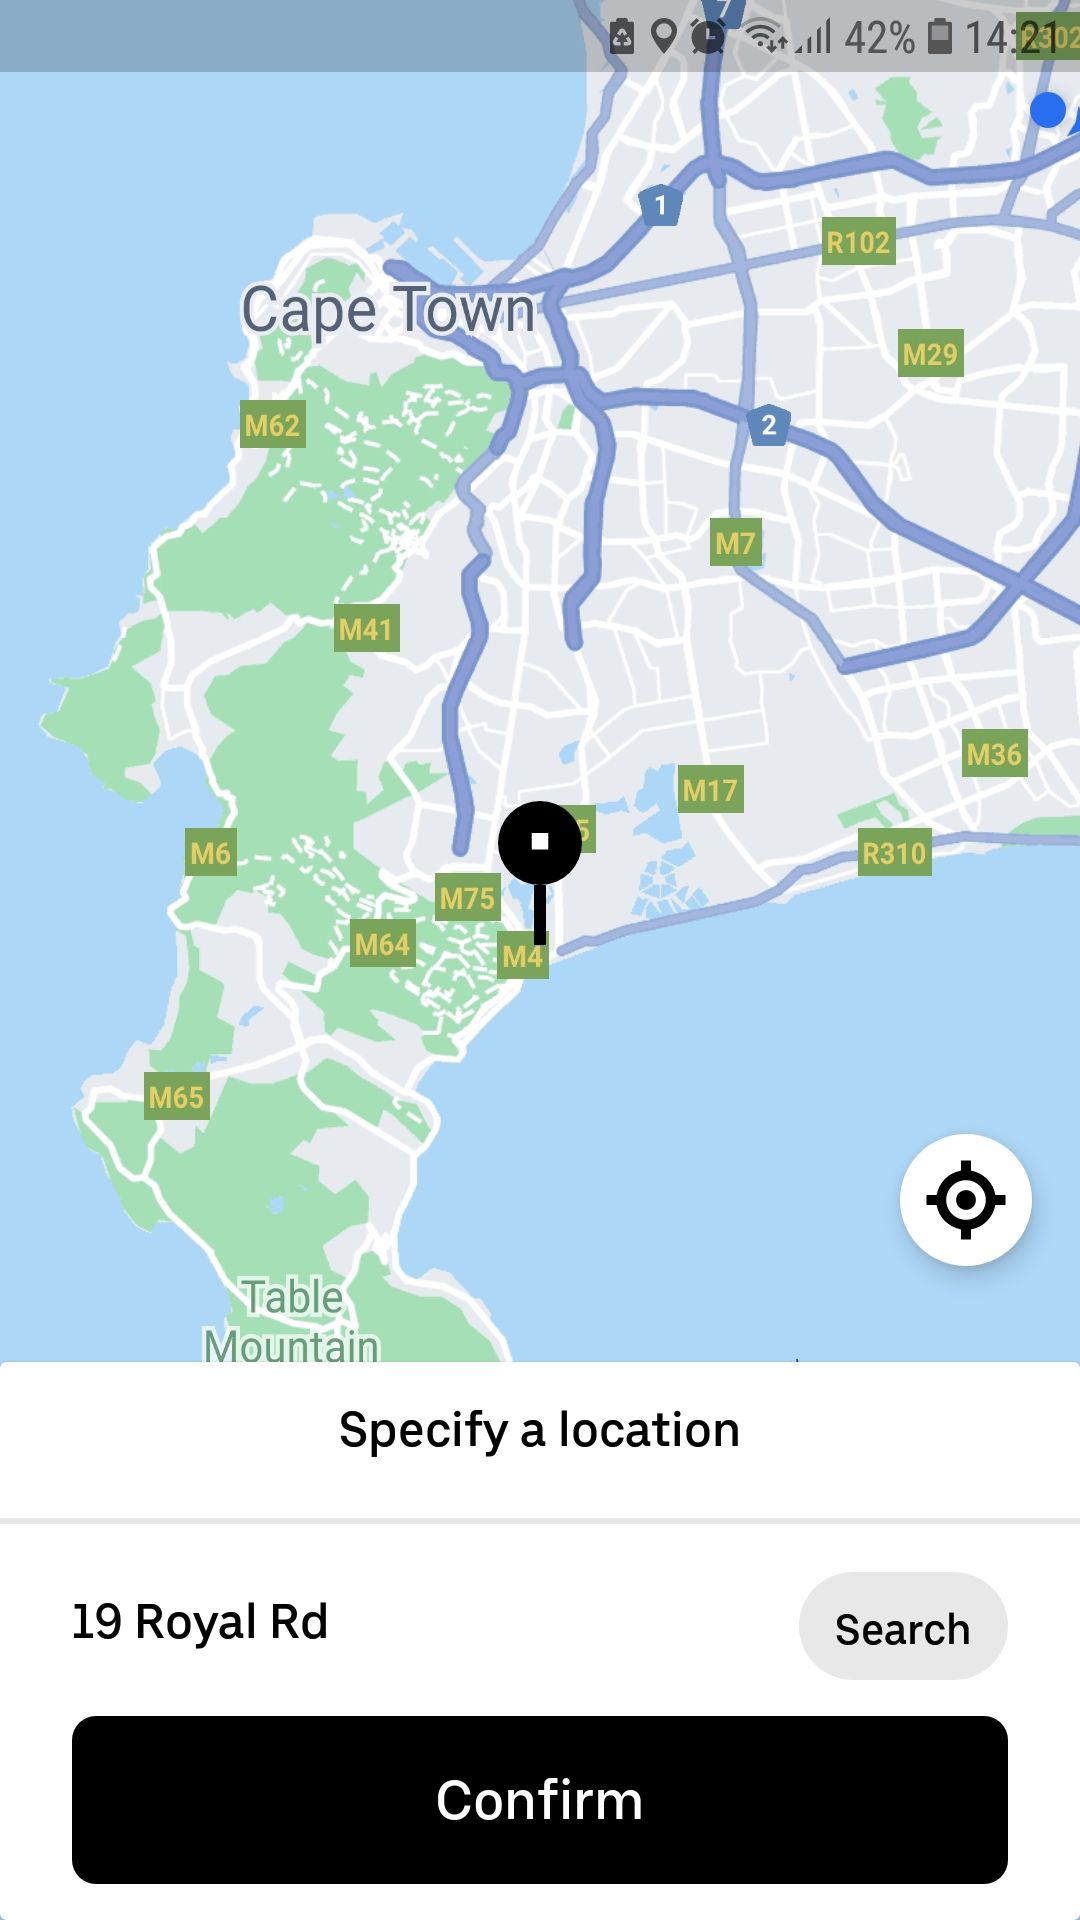 La aplicación móvil de Uber confirma la ubicación de entrega